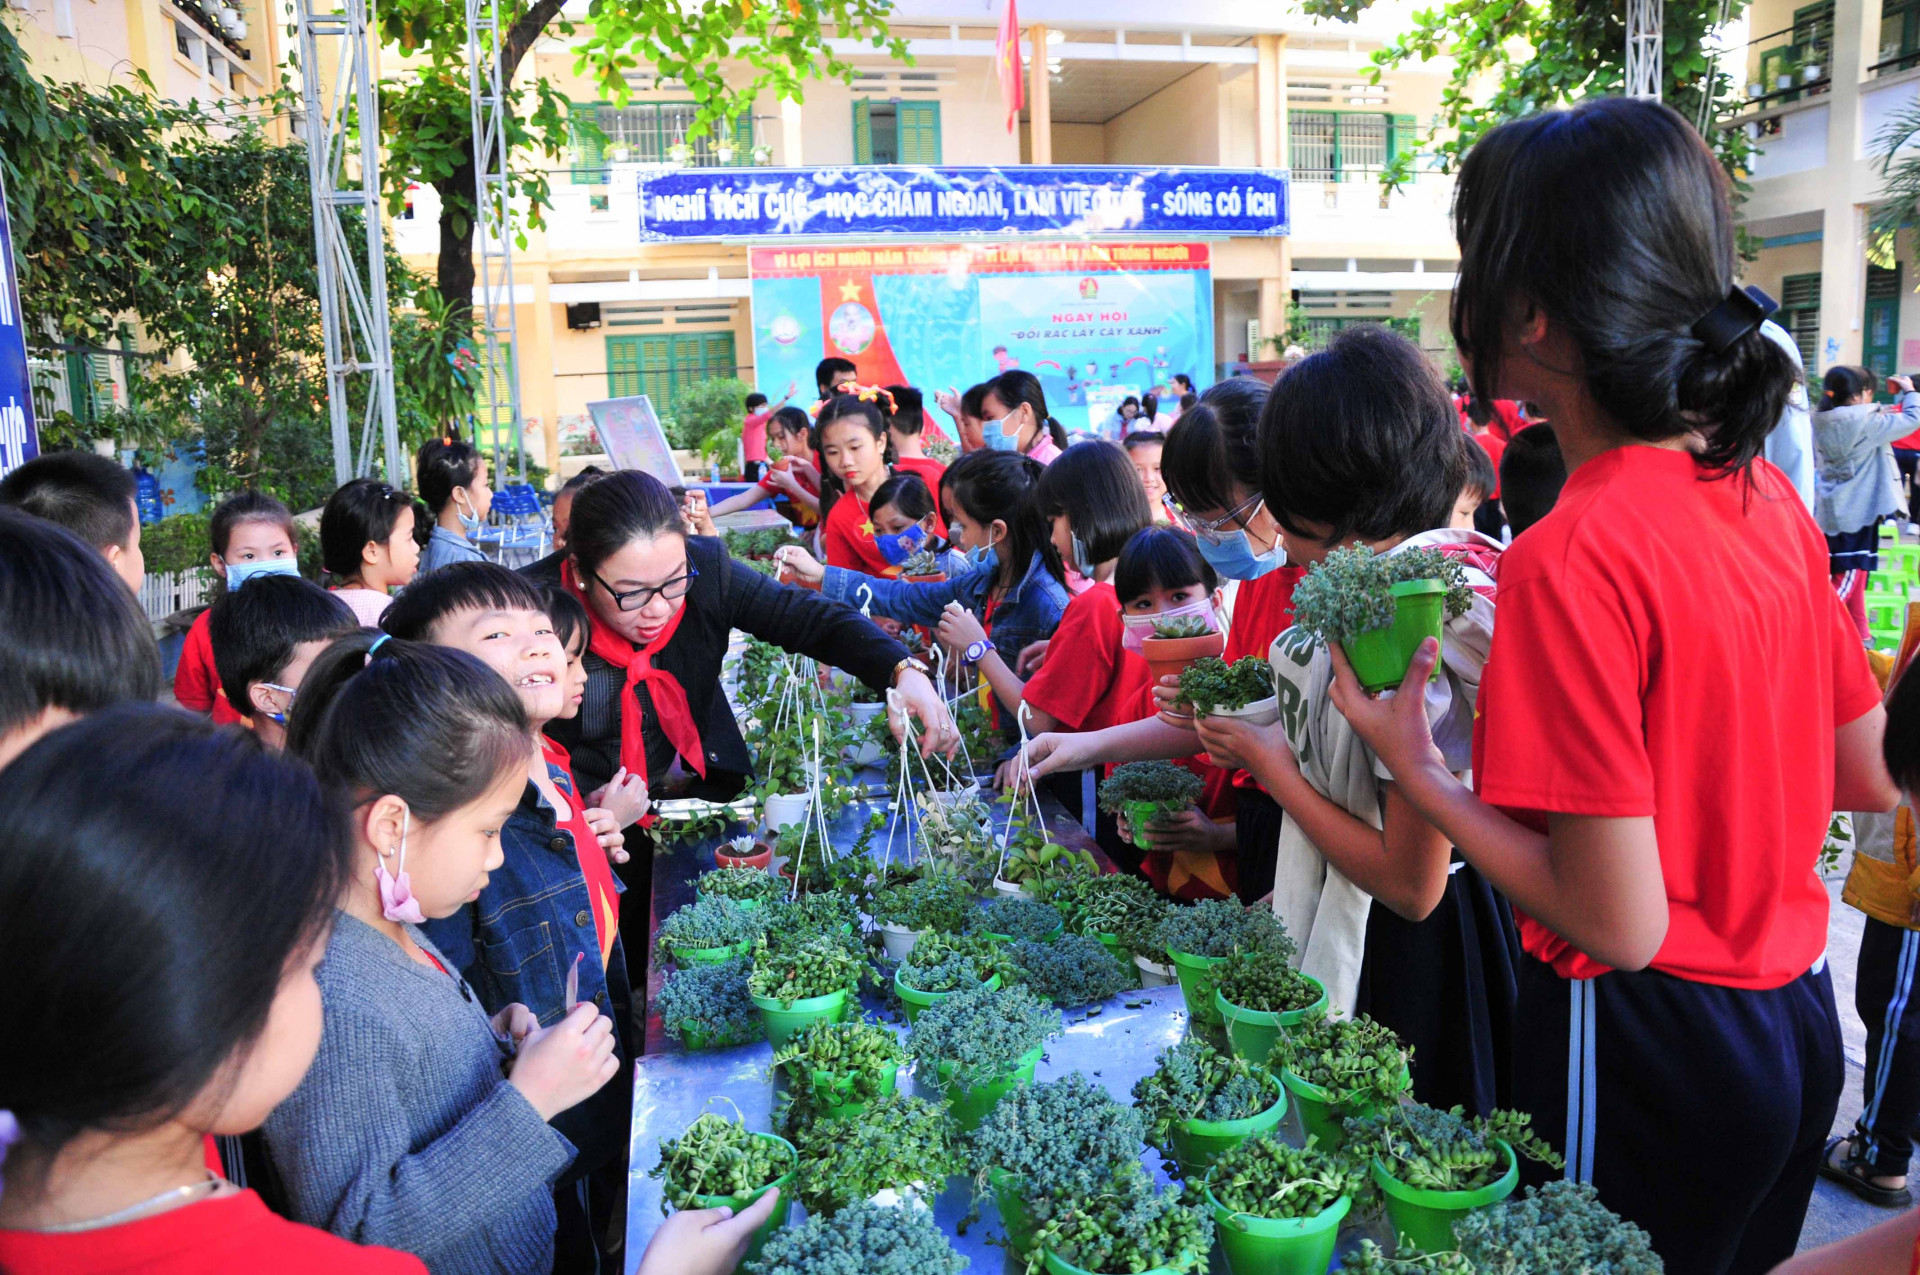 Đây là hoạt động đổi rác lấy cây xanh đầu tiên được Hội đồng Đội TP. Nha Trang tổ chức, dự kiến sẽ phát động đến toàn thể các liên đội trường học trên địa bàn thành phố